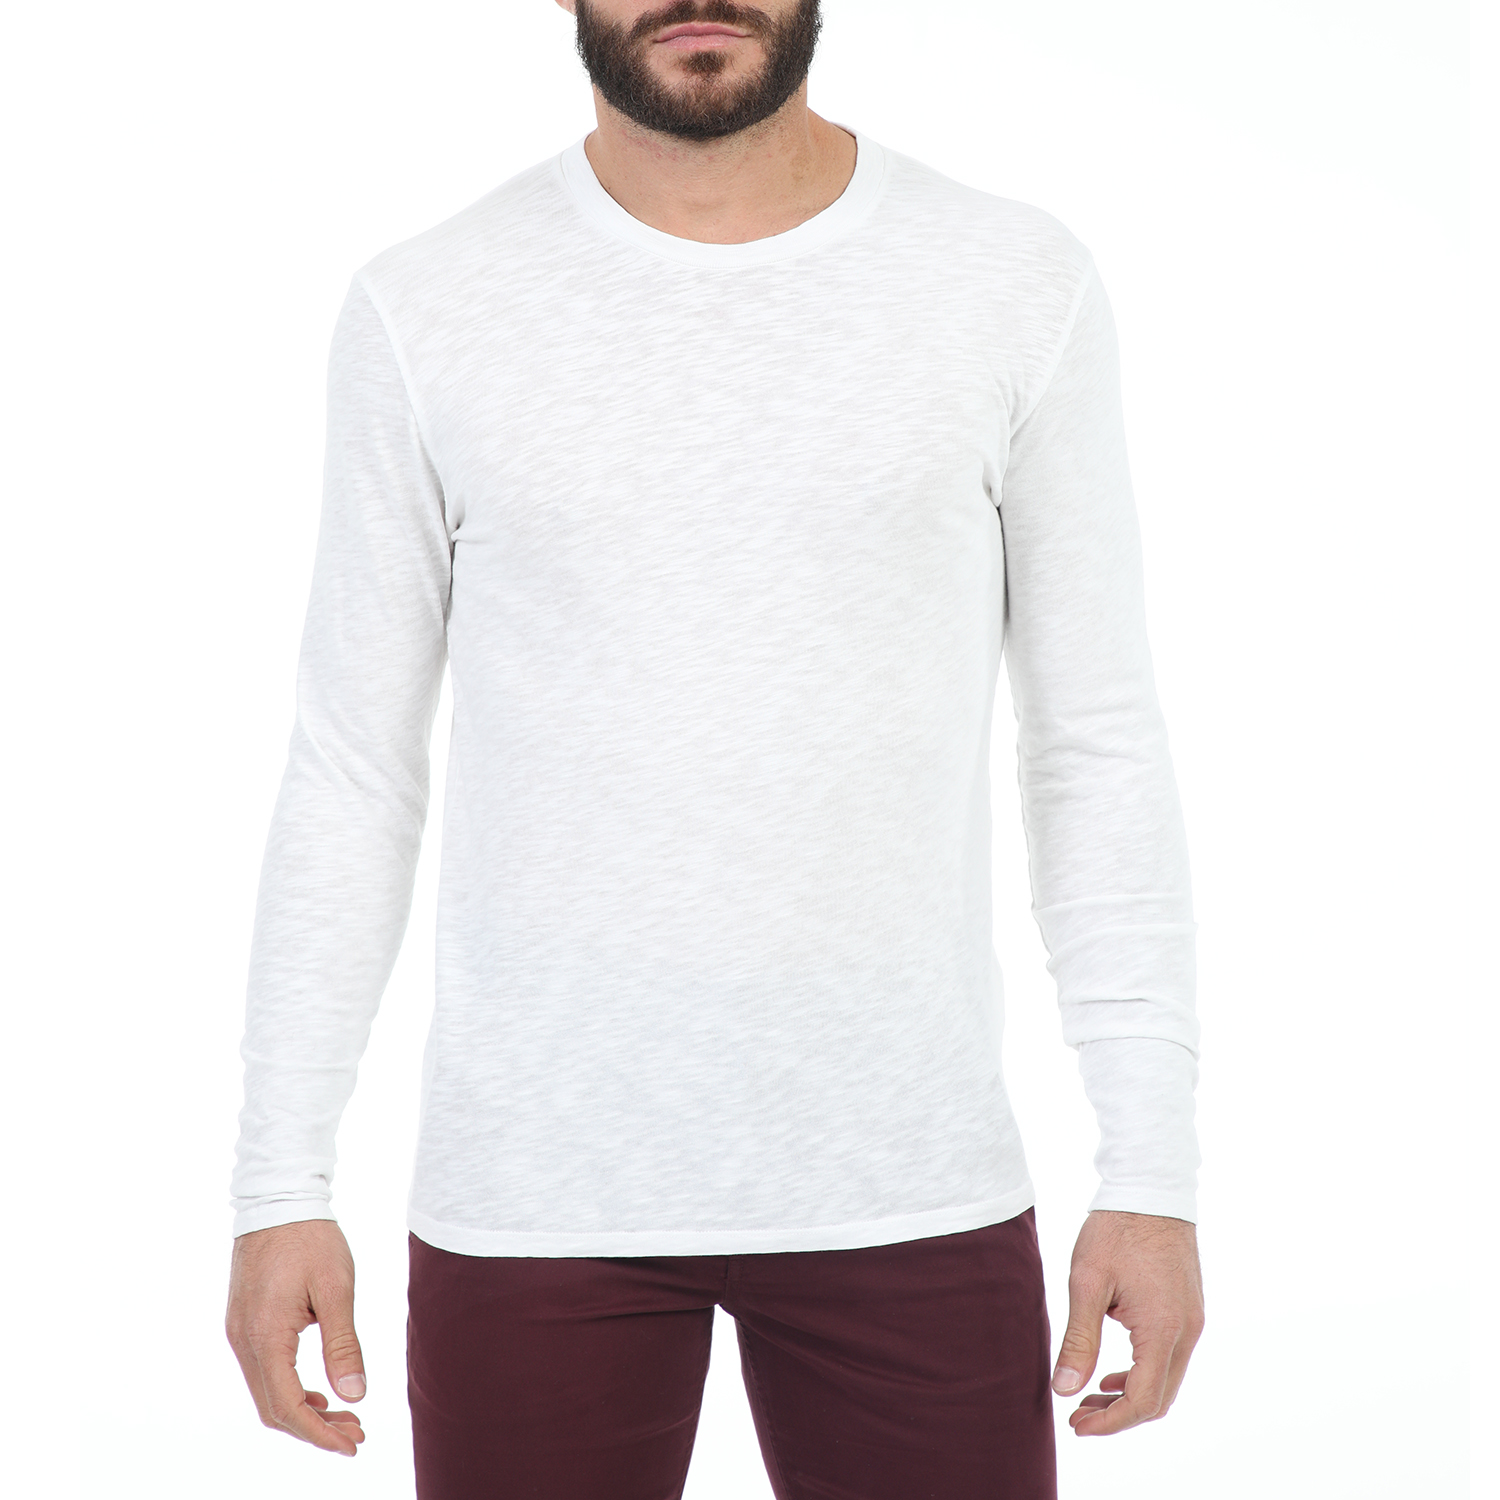 Ανδρικά/Ρούχα/Μπλούζες/Μακρυμάνικες AMERICAN VINTAGE - Ανδρική μακρυμάνικη μπλούζα AMERICAN VINTAGE λευκή